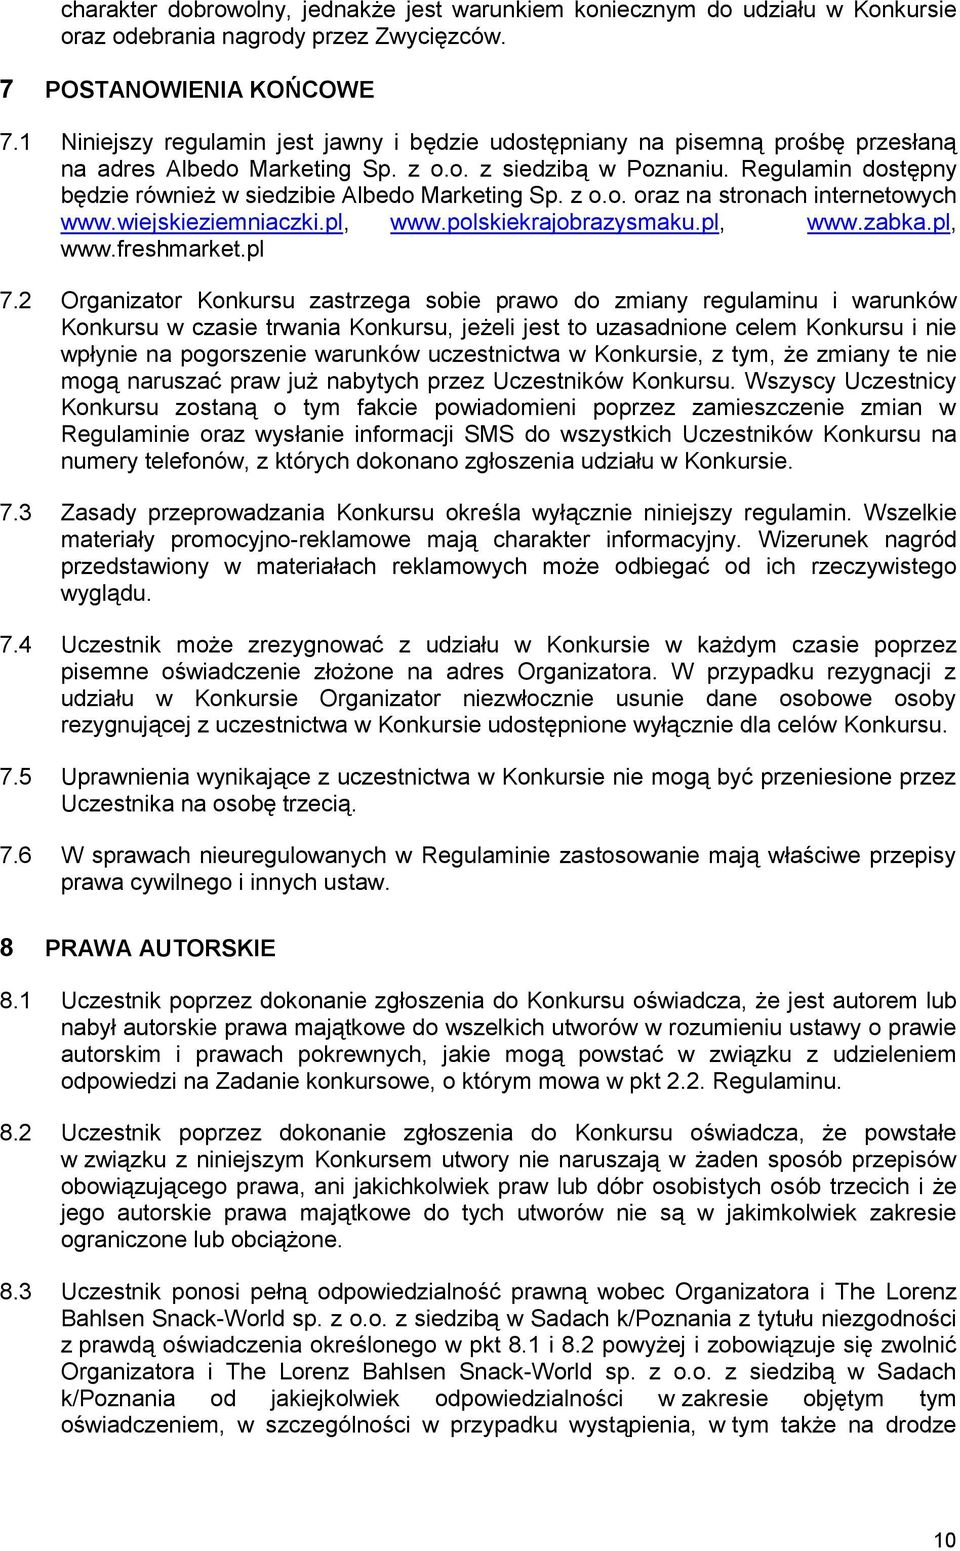 Regulamin dostępny będzie również w siedzibie Albedo Marketing Sp. z o.o. oraz na stronach internetowych www.wiejskieziemniaczki.pl, www.polskiekrajobrazysmaku.pl, www.zabka.pl, www.freshmarket.pl 7.